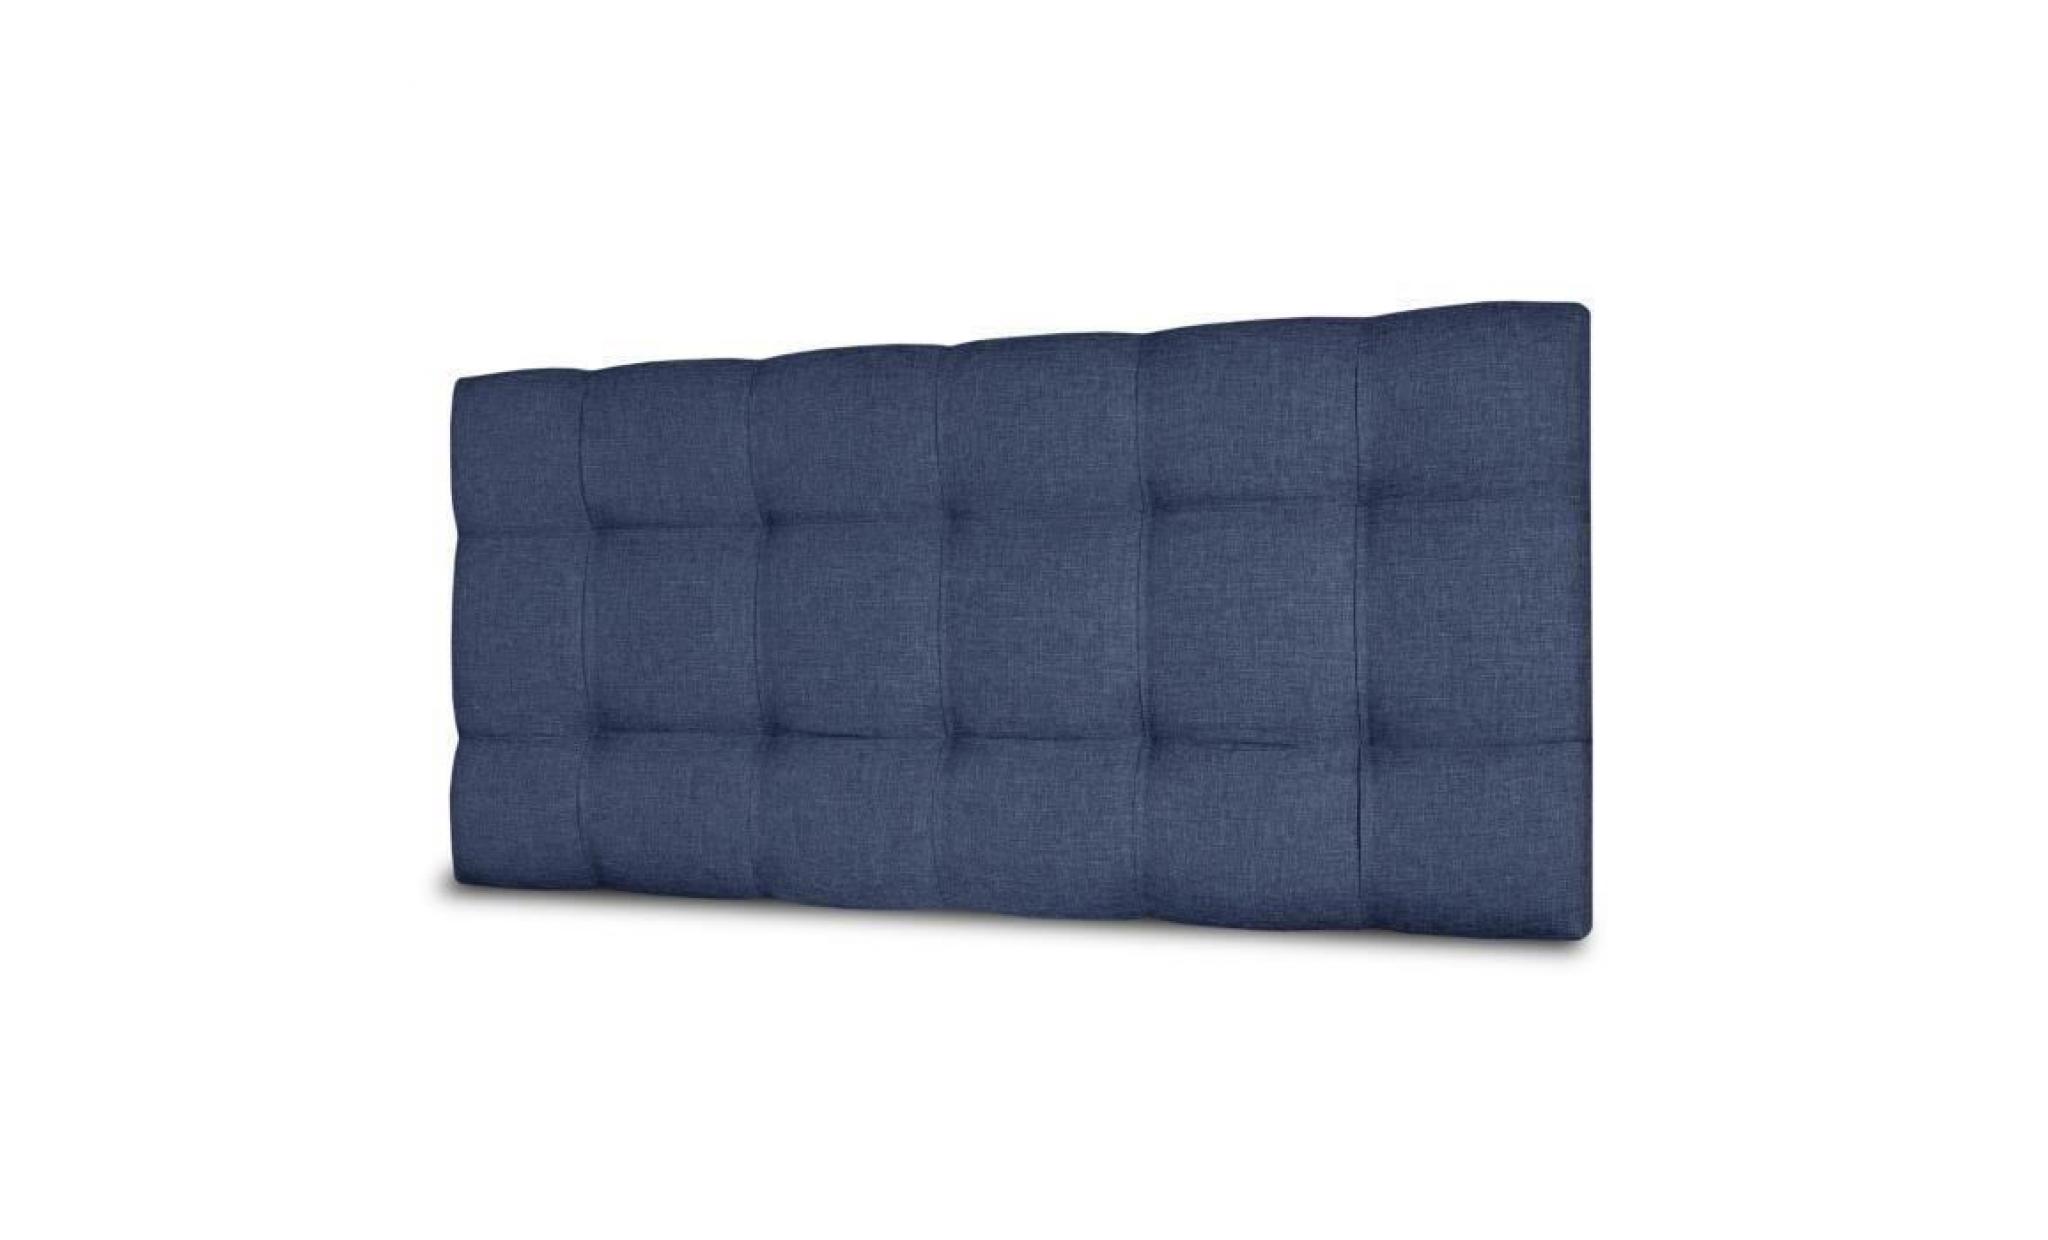 finlandek tête de lit kyna classique   tissu bleu denim   l 140 cm pas cher